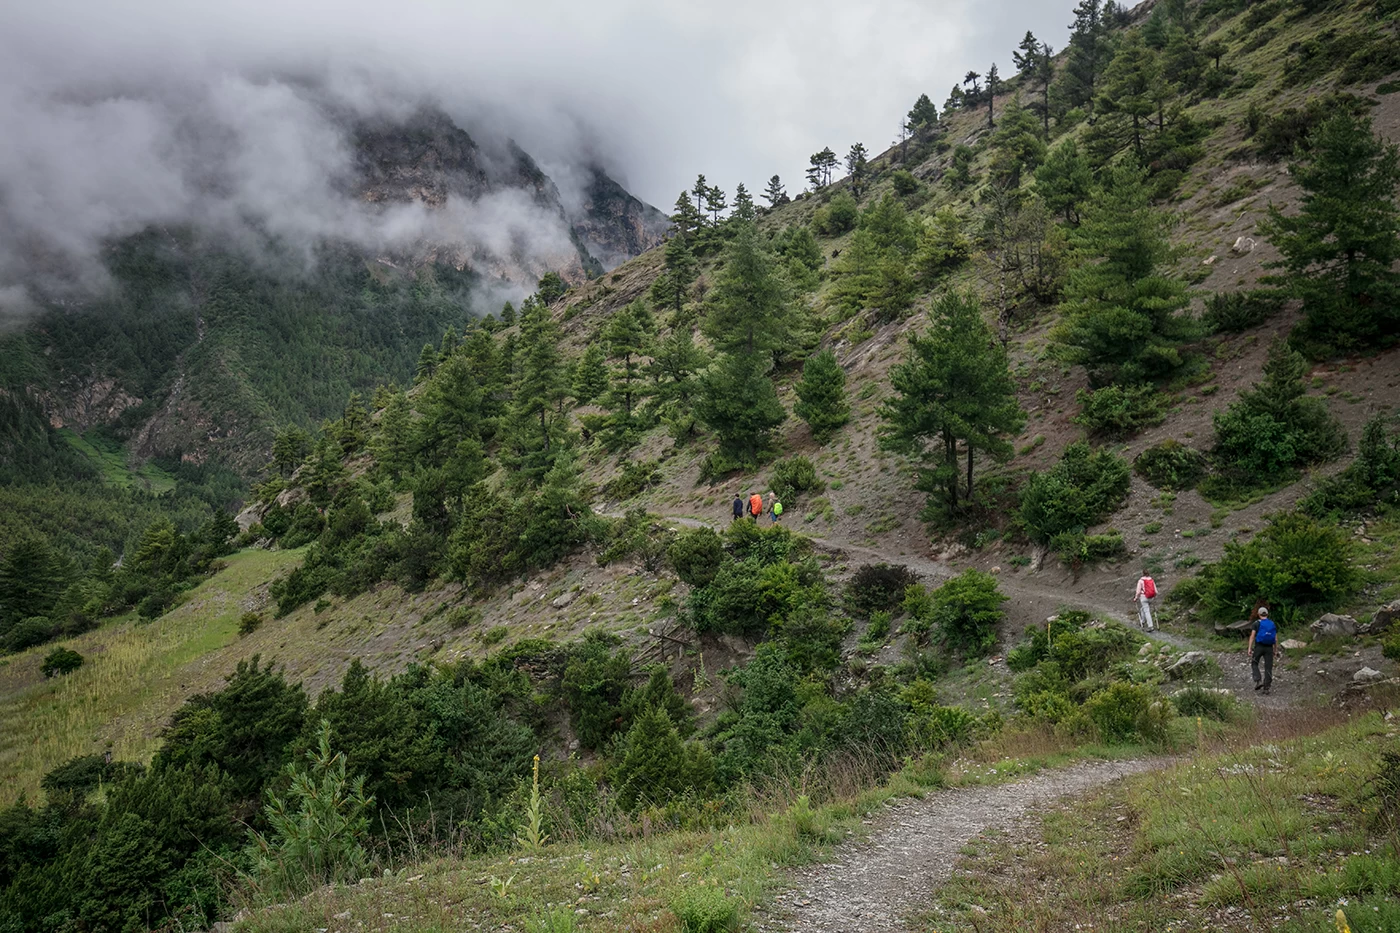  One way to Manang, Annapurna Trek 